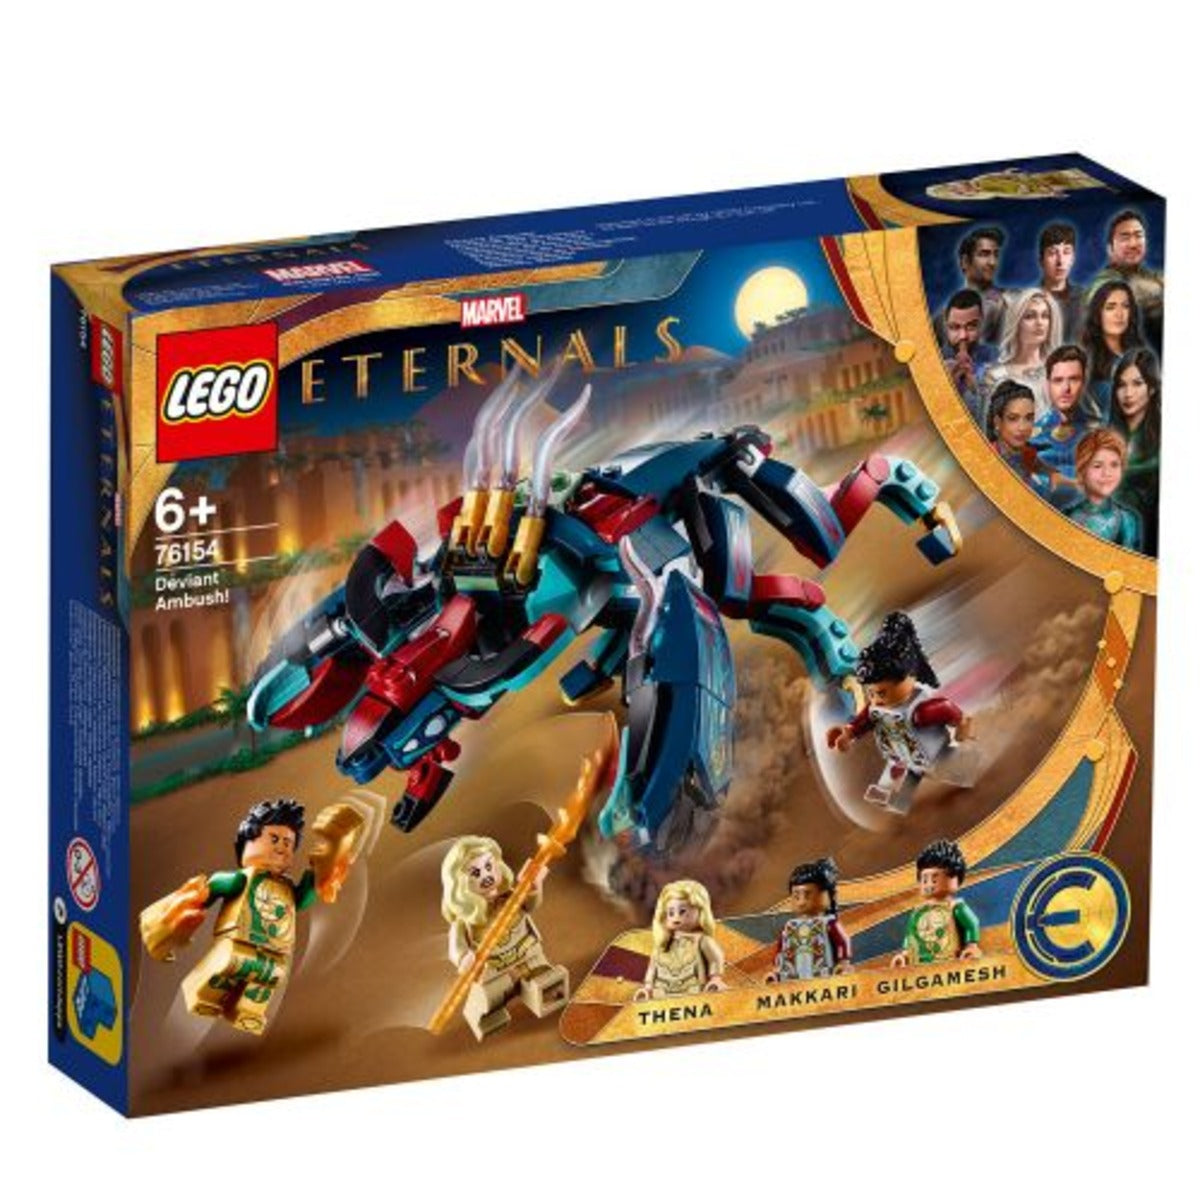 LEGO SUPER HEROES 76154 - ЗАСАДА НА DEVIANT